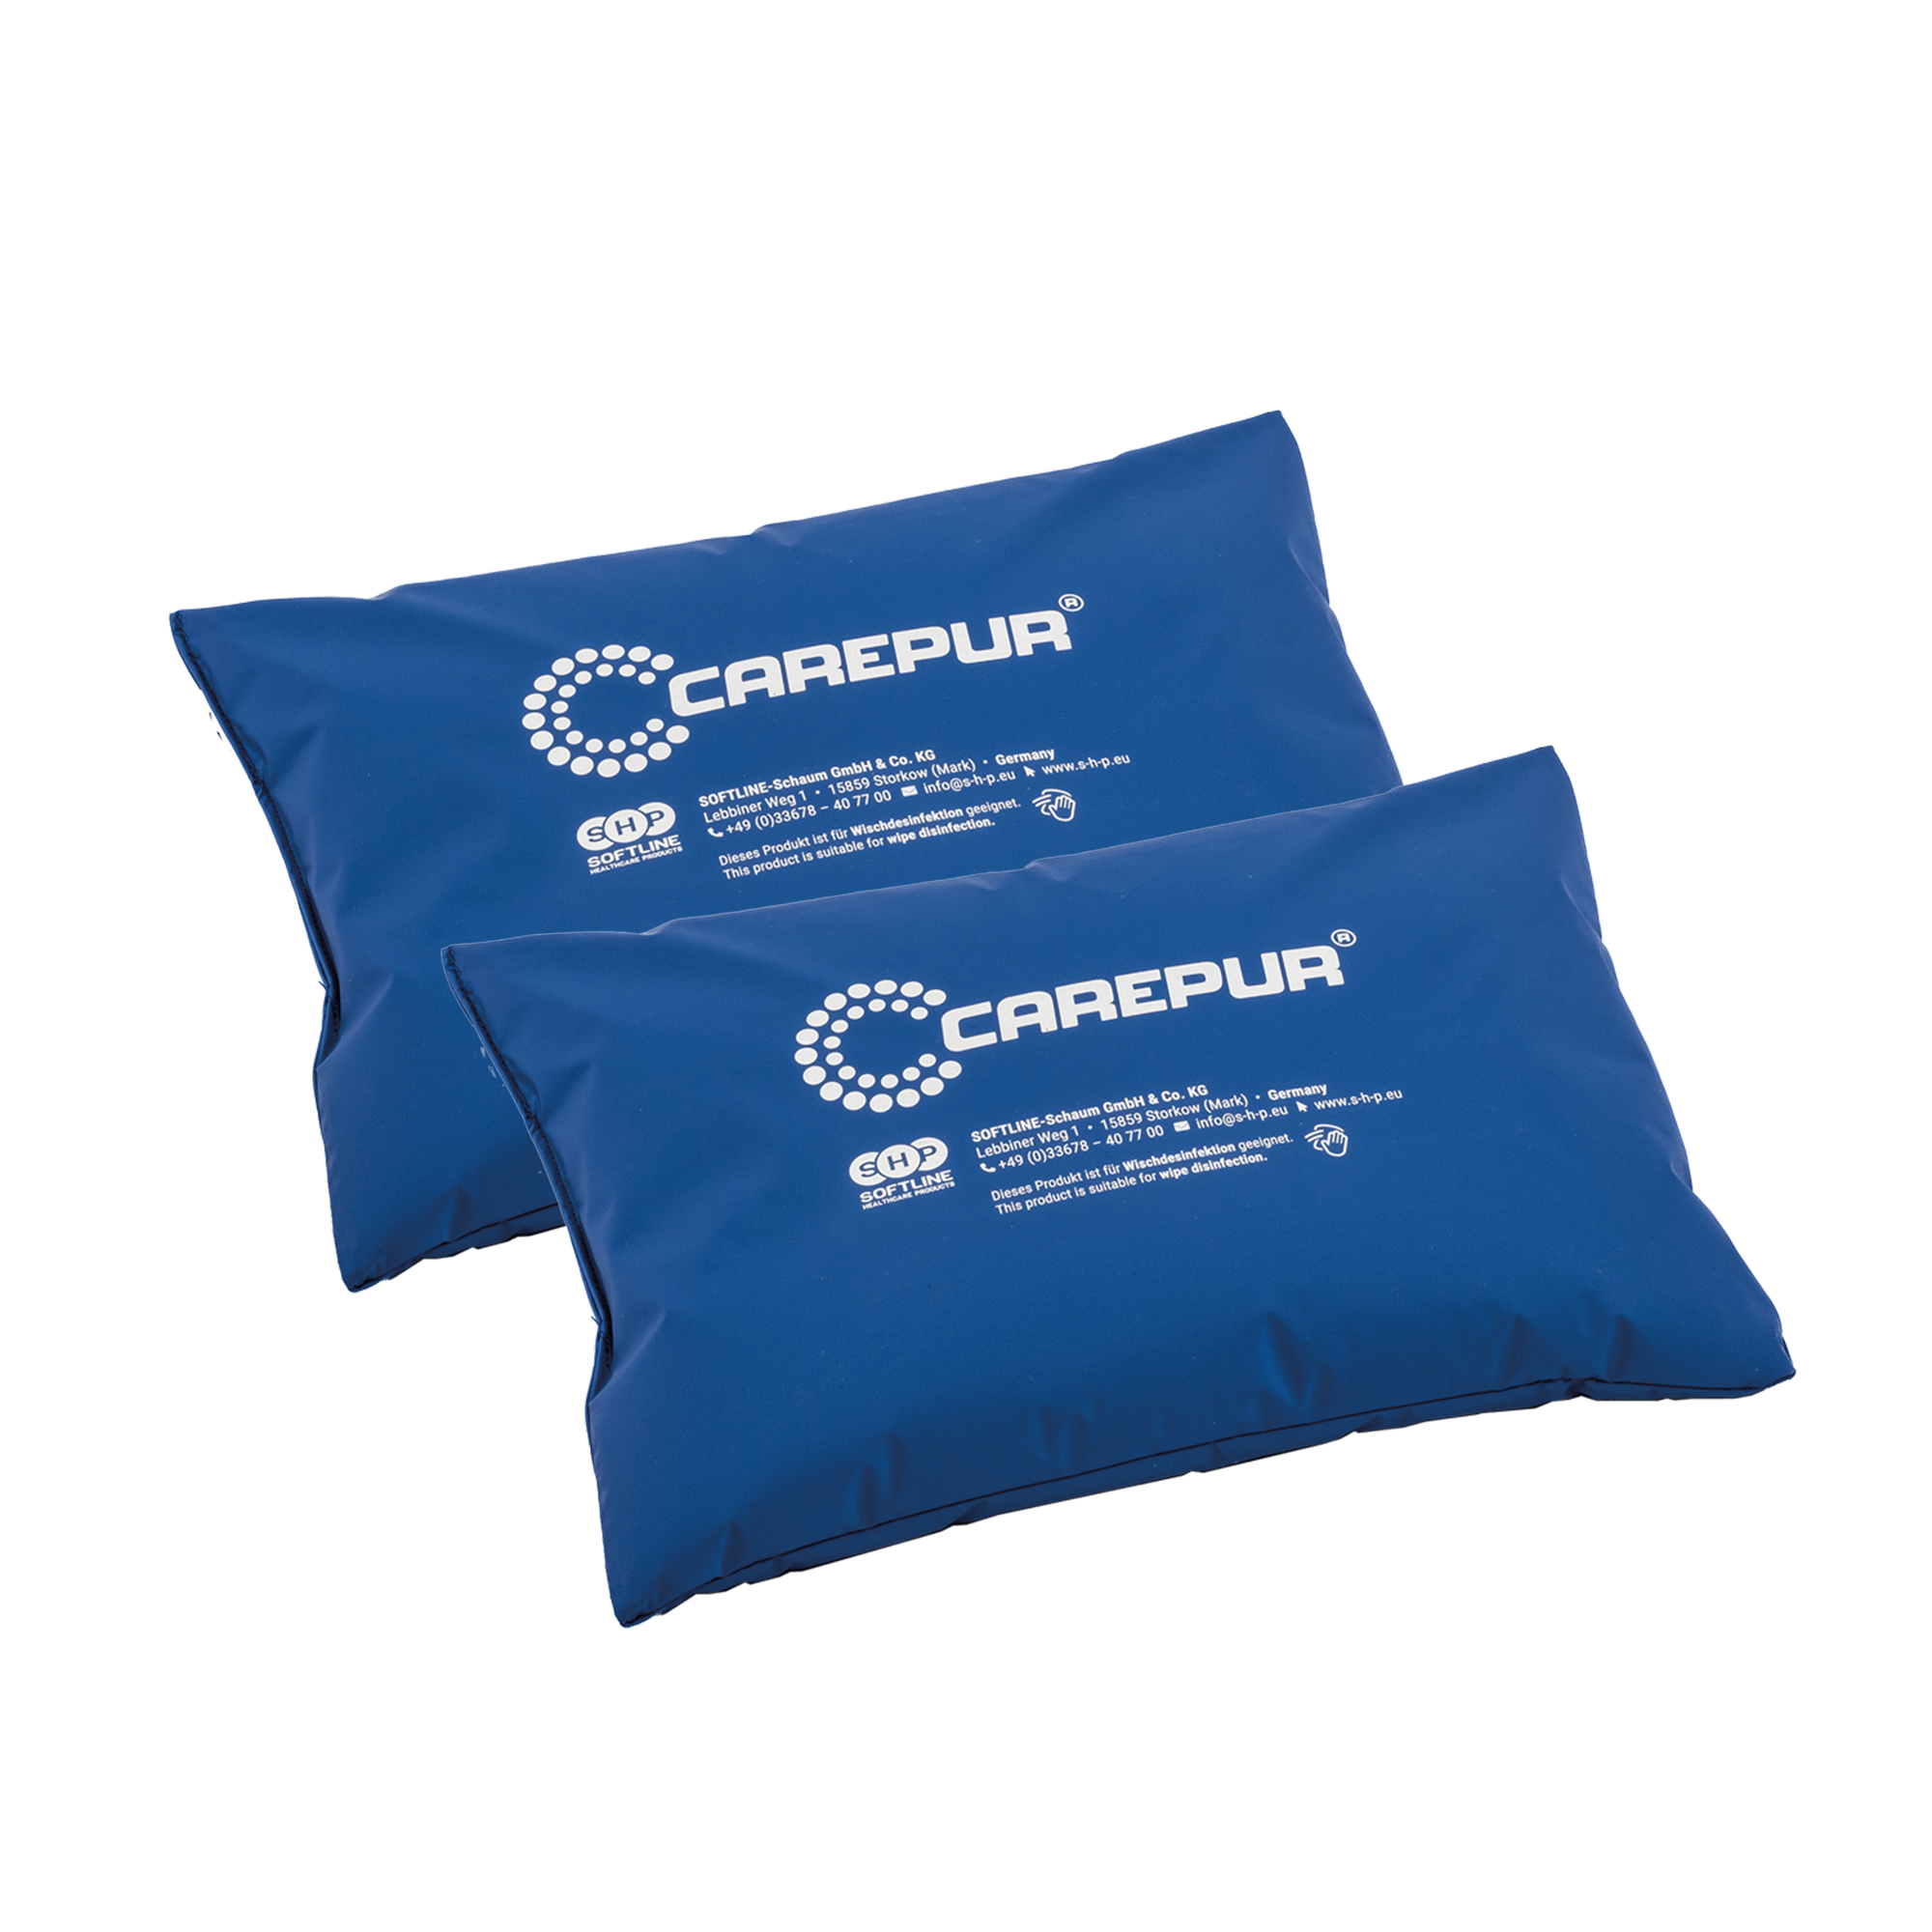 SHP CAREPUR Universal Pillow blue, 40 x 30 cm, 2 pieces